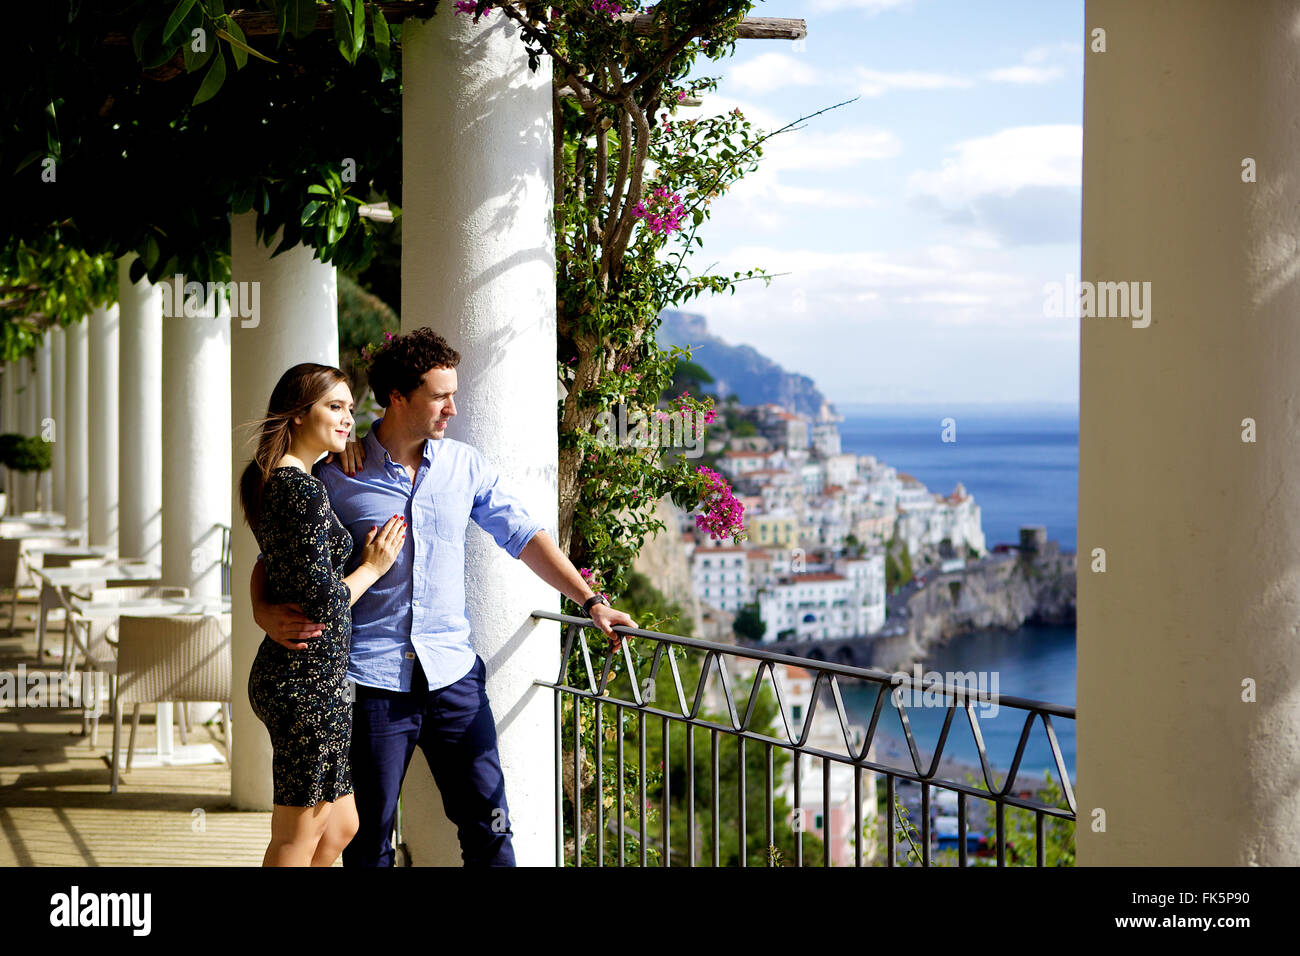 Les jeunes, dans l'amour brunette en vacances en Italie, donnant sur la vue de la côte d'Amalfi sur une belle journée ensoleillée Banque D'Images